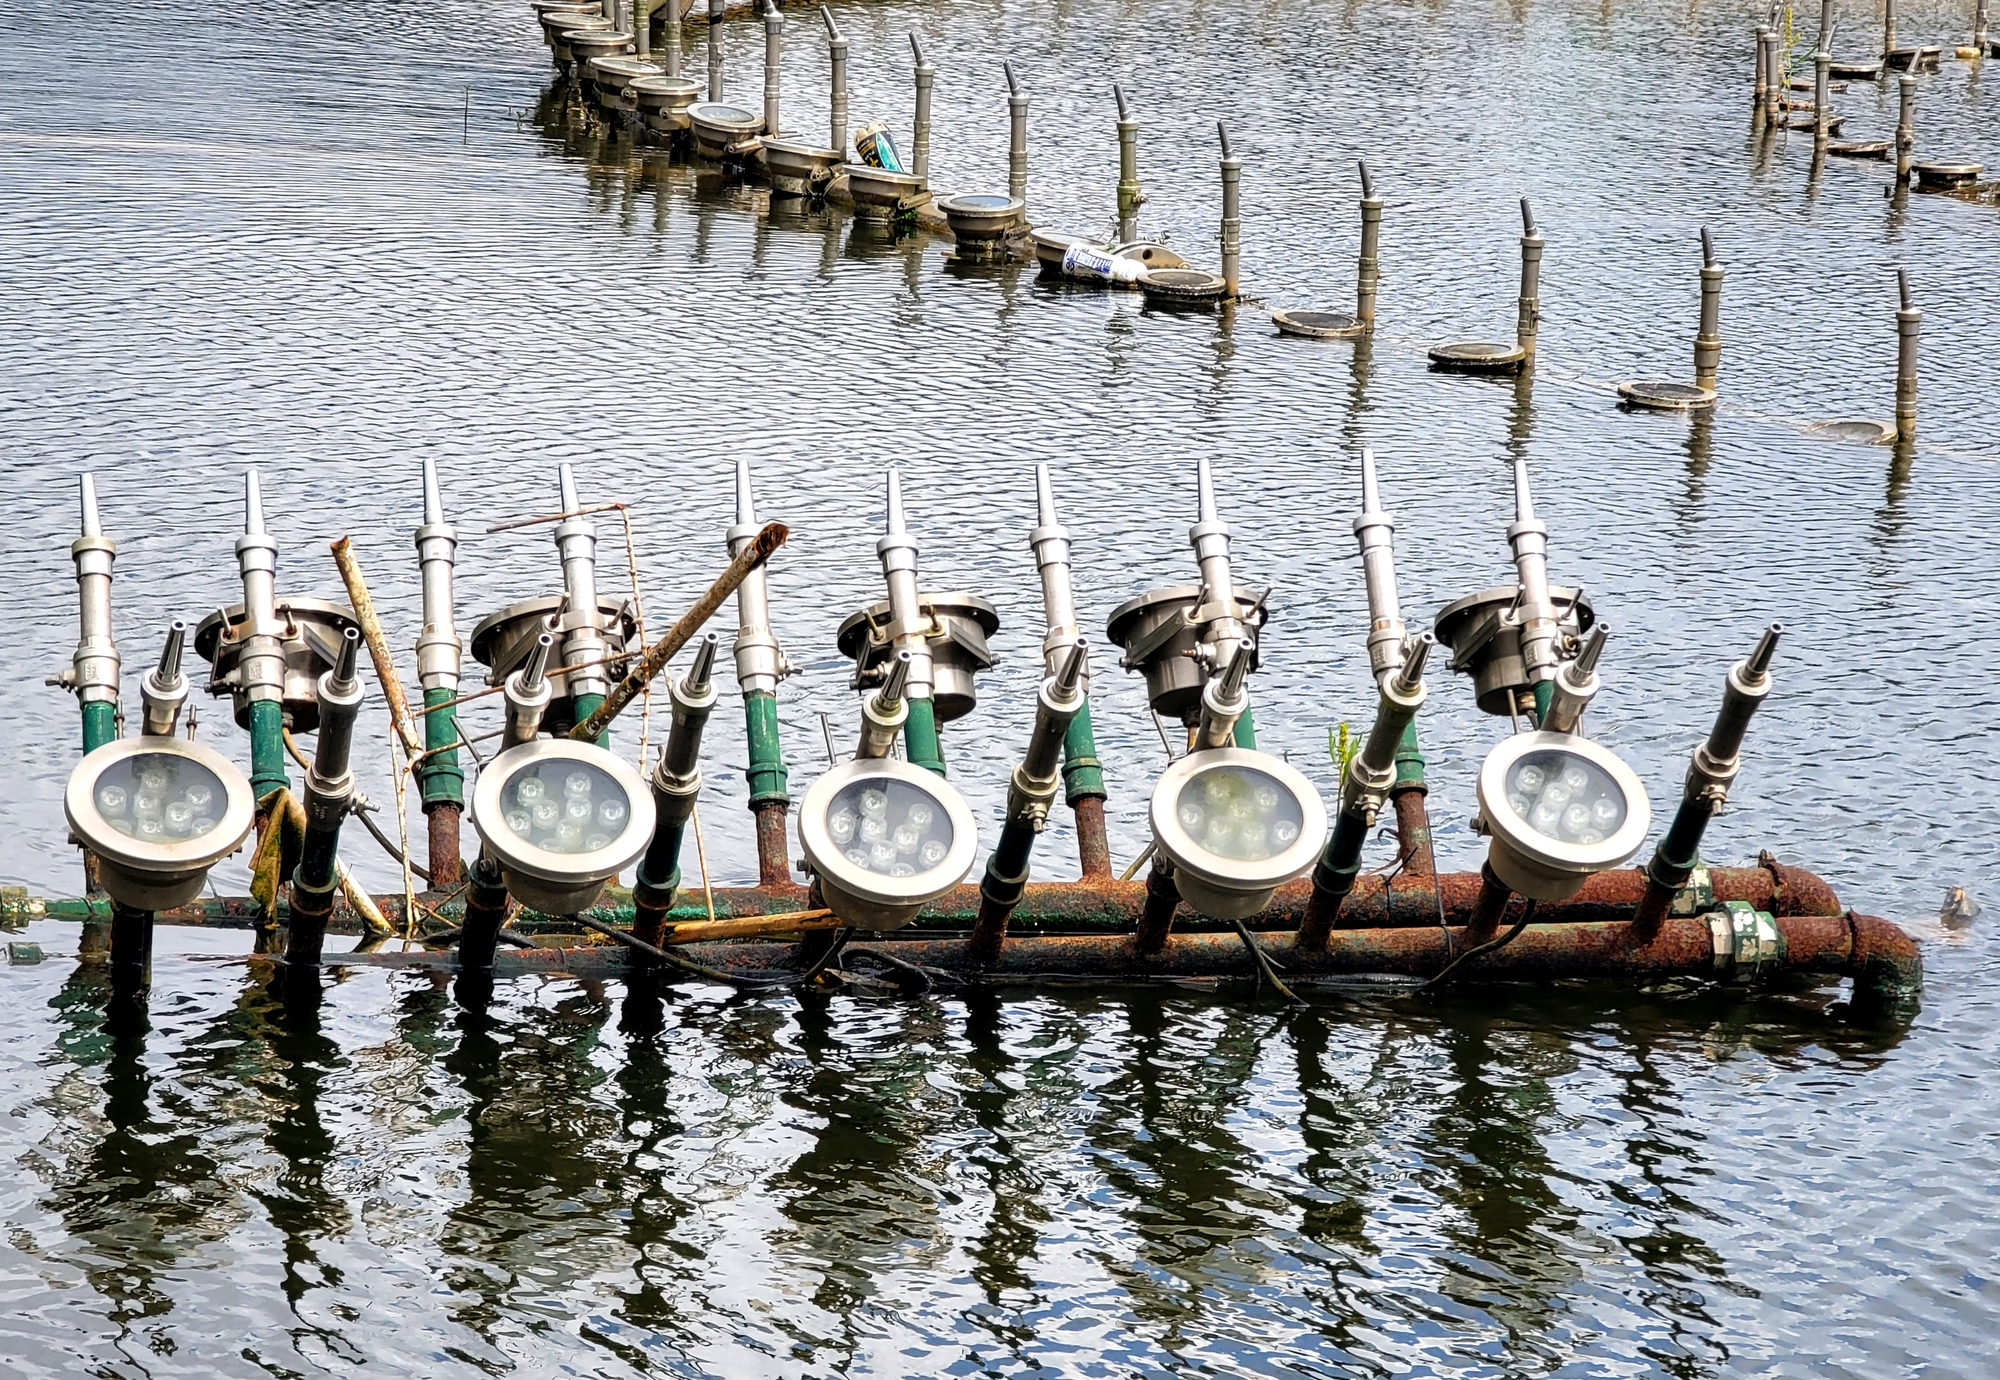 Cận cảnh công trình nhạc nước 10 tỉ đồng đắp chiếu trên hồ Xuân Hương - Ảnh 9.